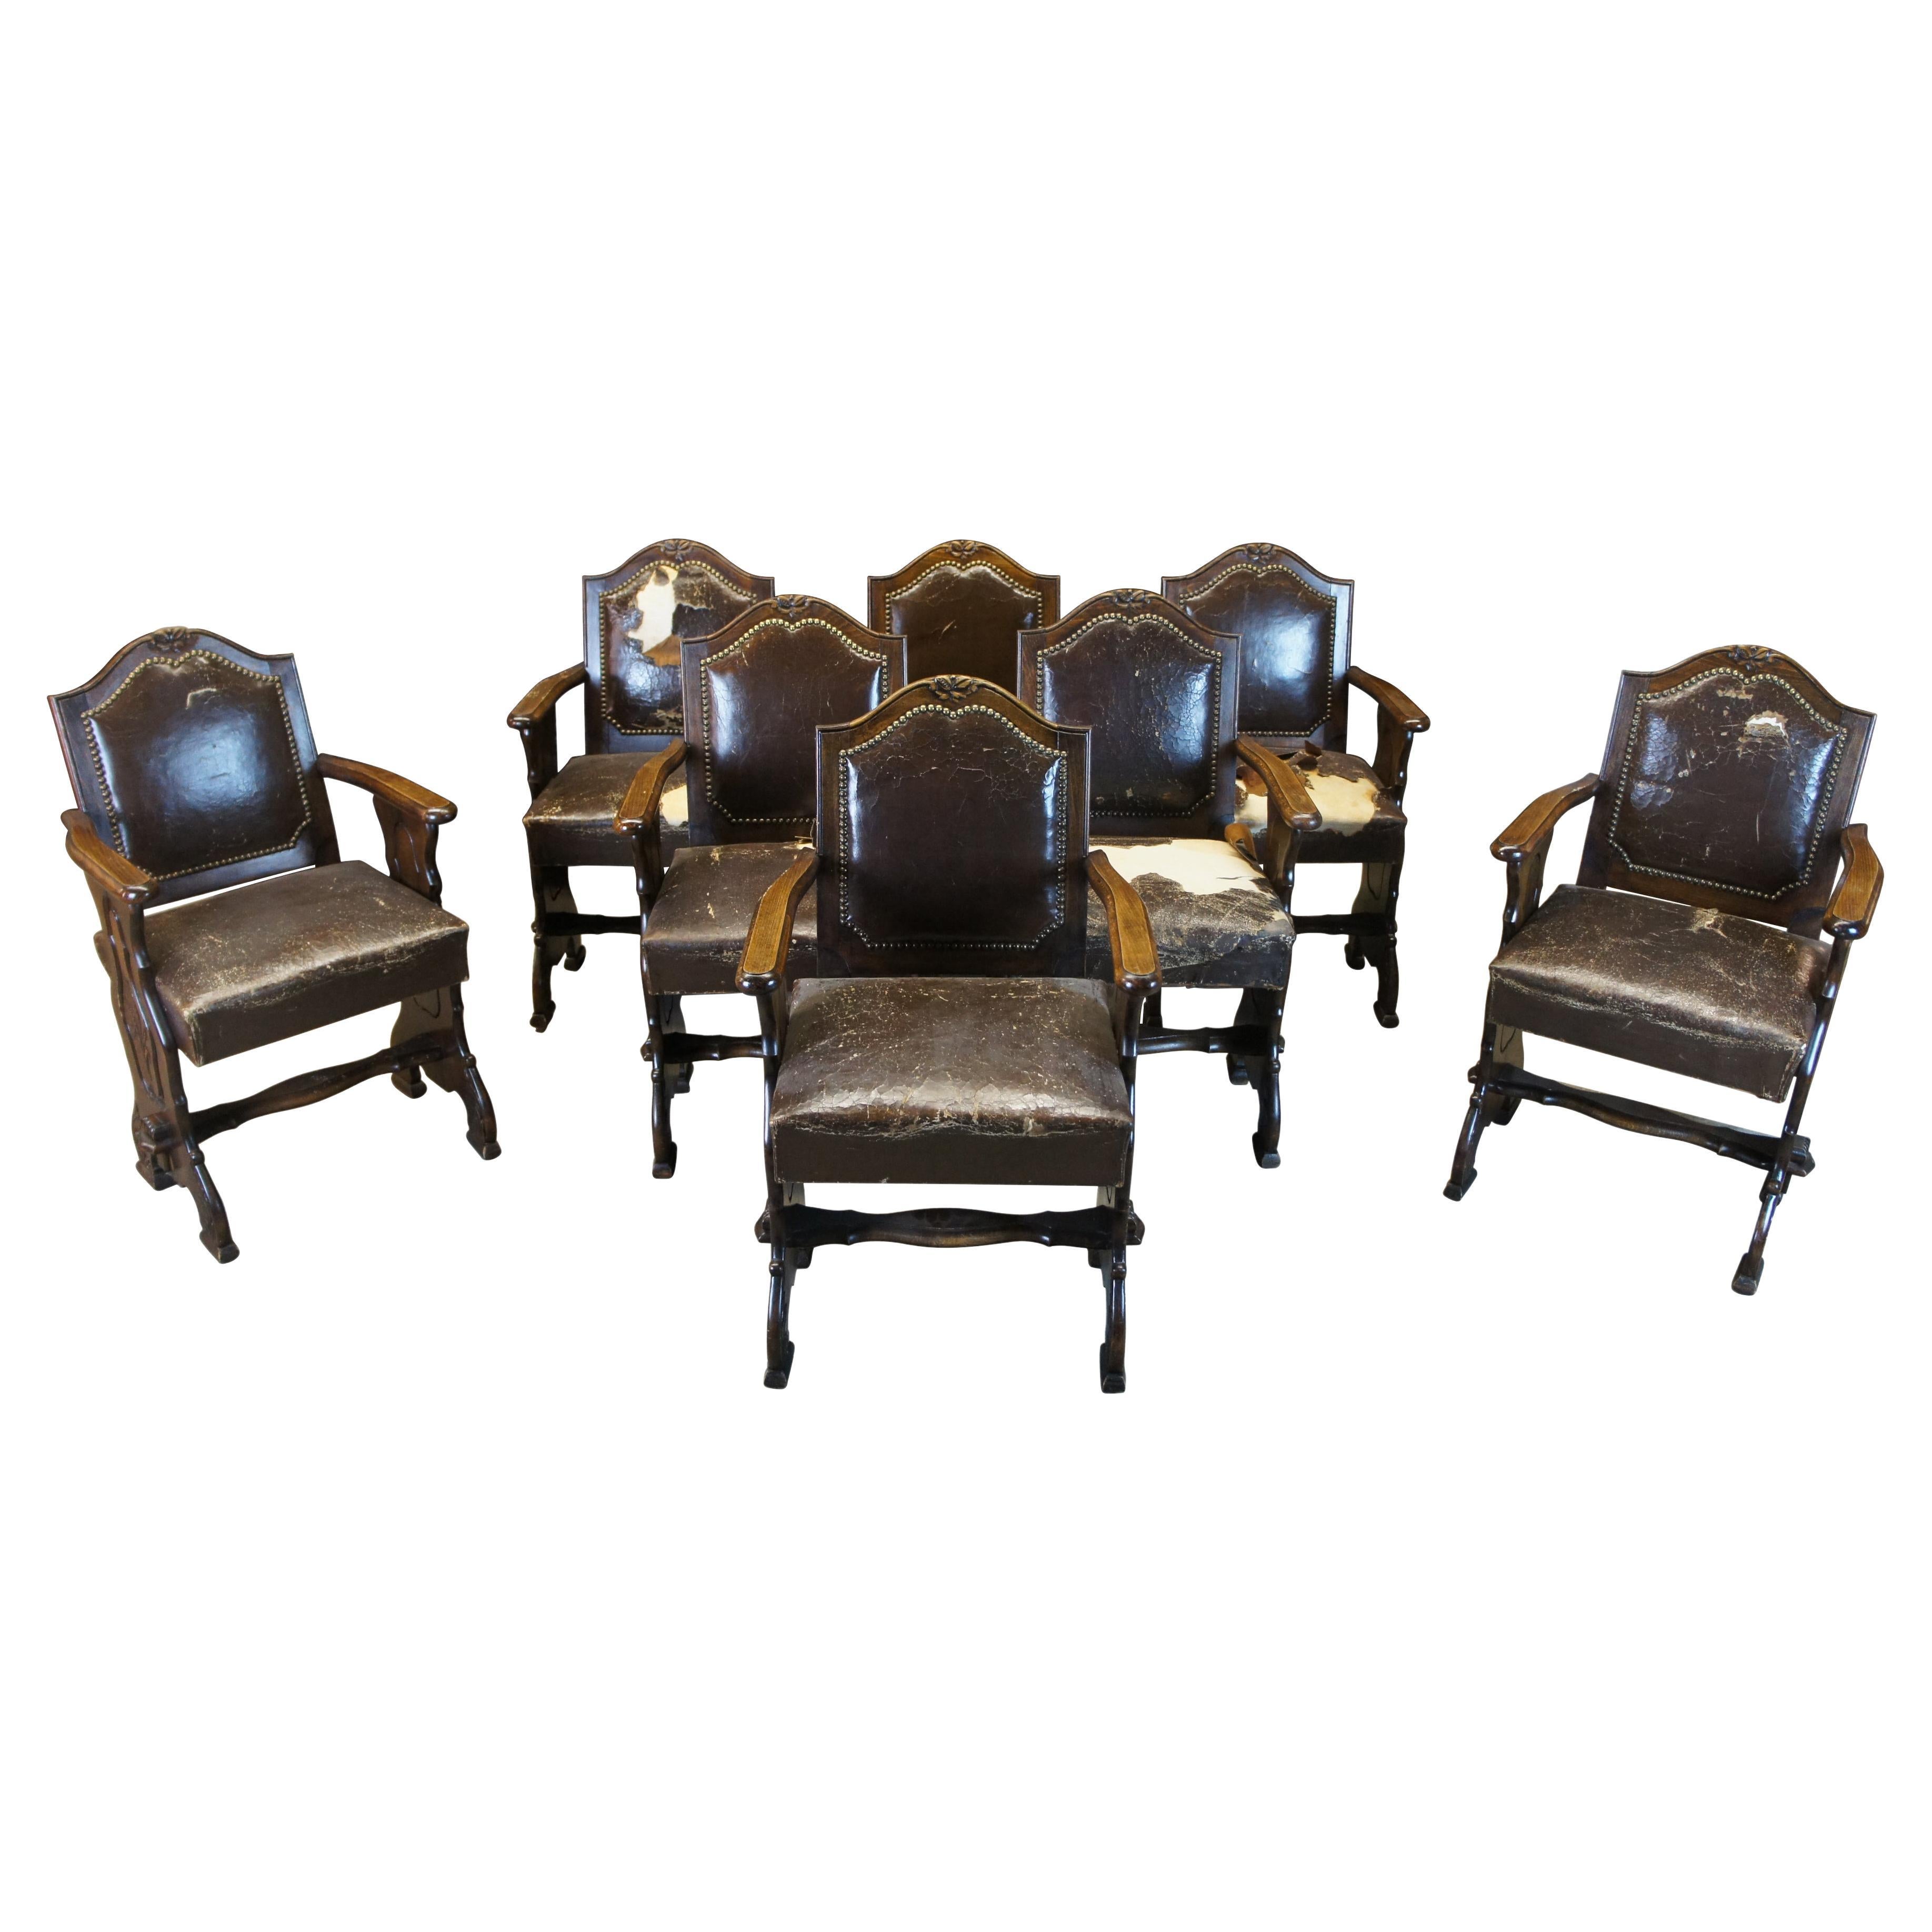 8 Chaises de salle à manger anciennes en chêne sculpté et cuir Renaissance de l'ancien monde français